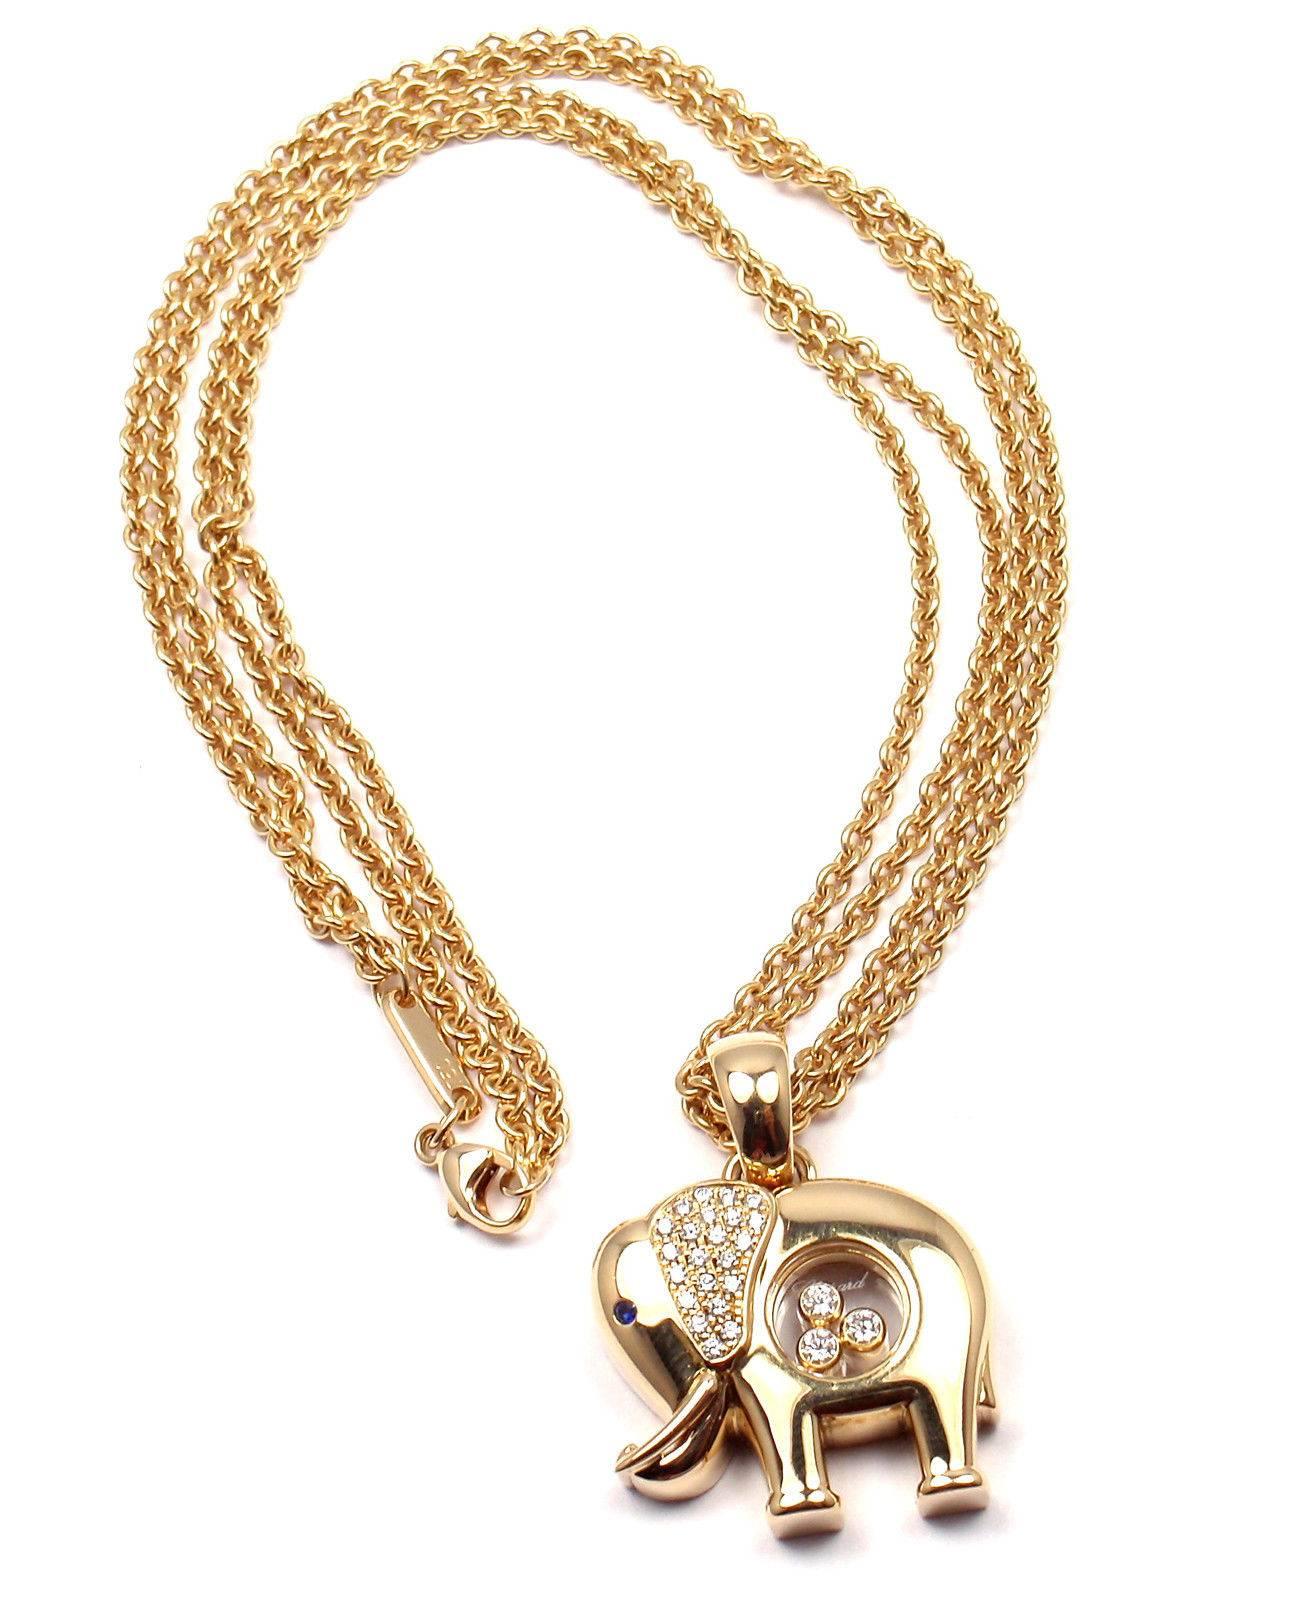 collier pendentif Happy Elephant en or jaune 18k avec diamants et saphirs de Chopard.  
Avec 22 diamants ronds flottants VS1 clarté:: couleur E poids total environ .22ct
3 diamants ronds flottants taille brillant VS1 clarté:: couleur E poids total